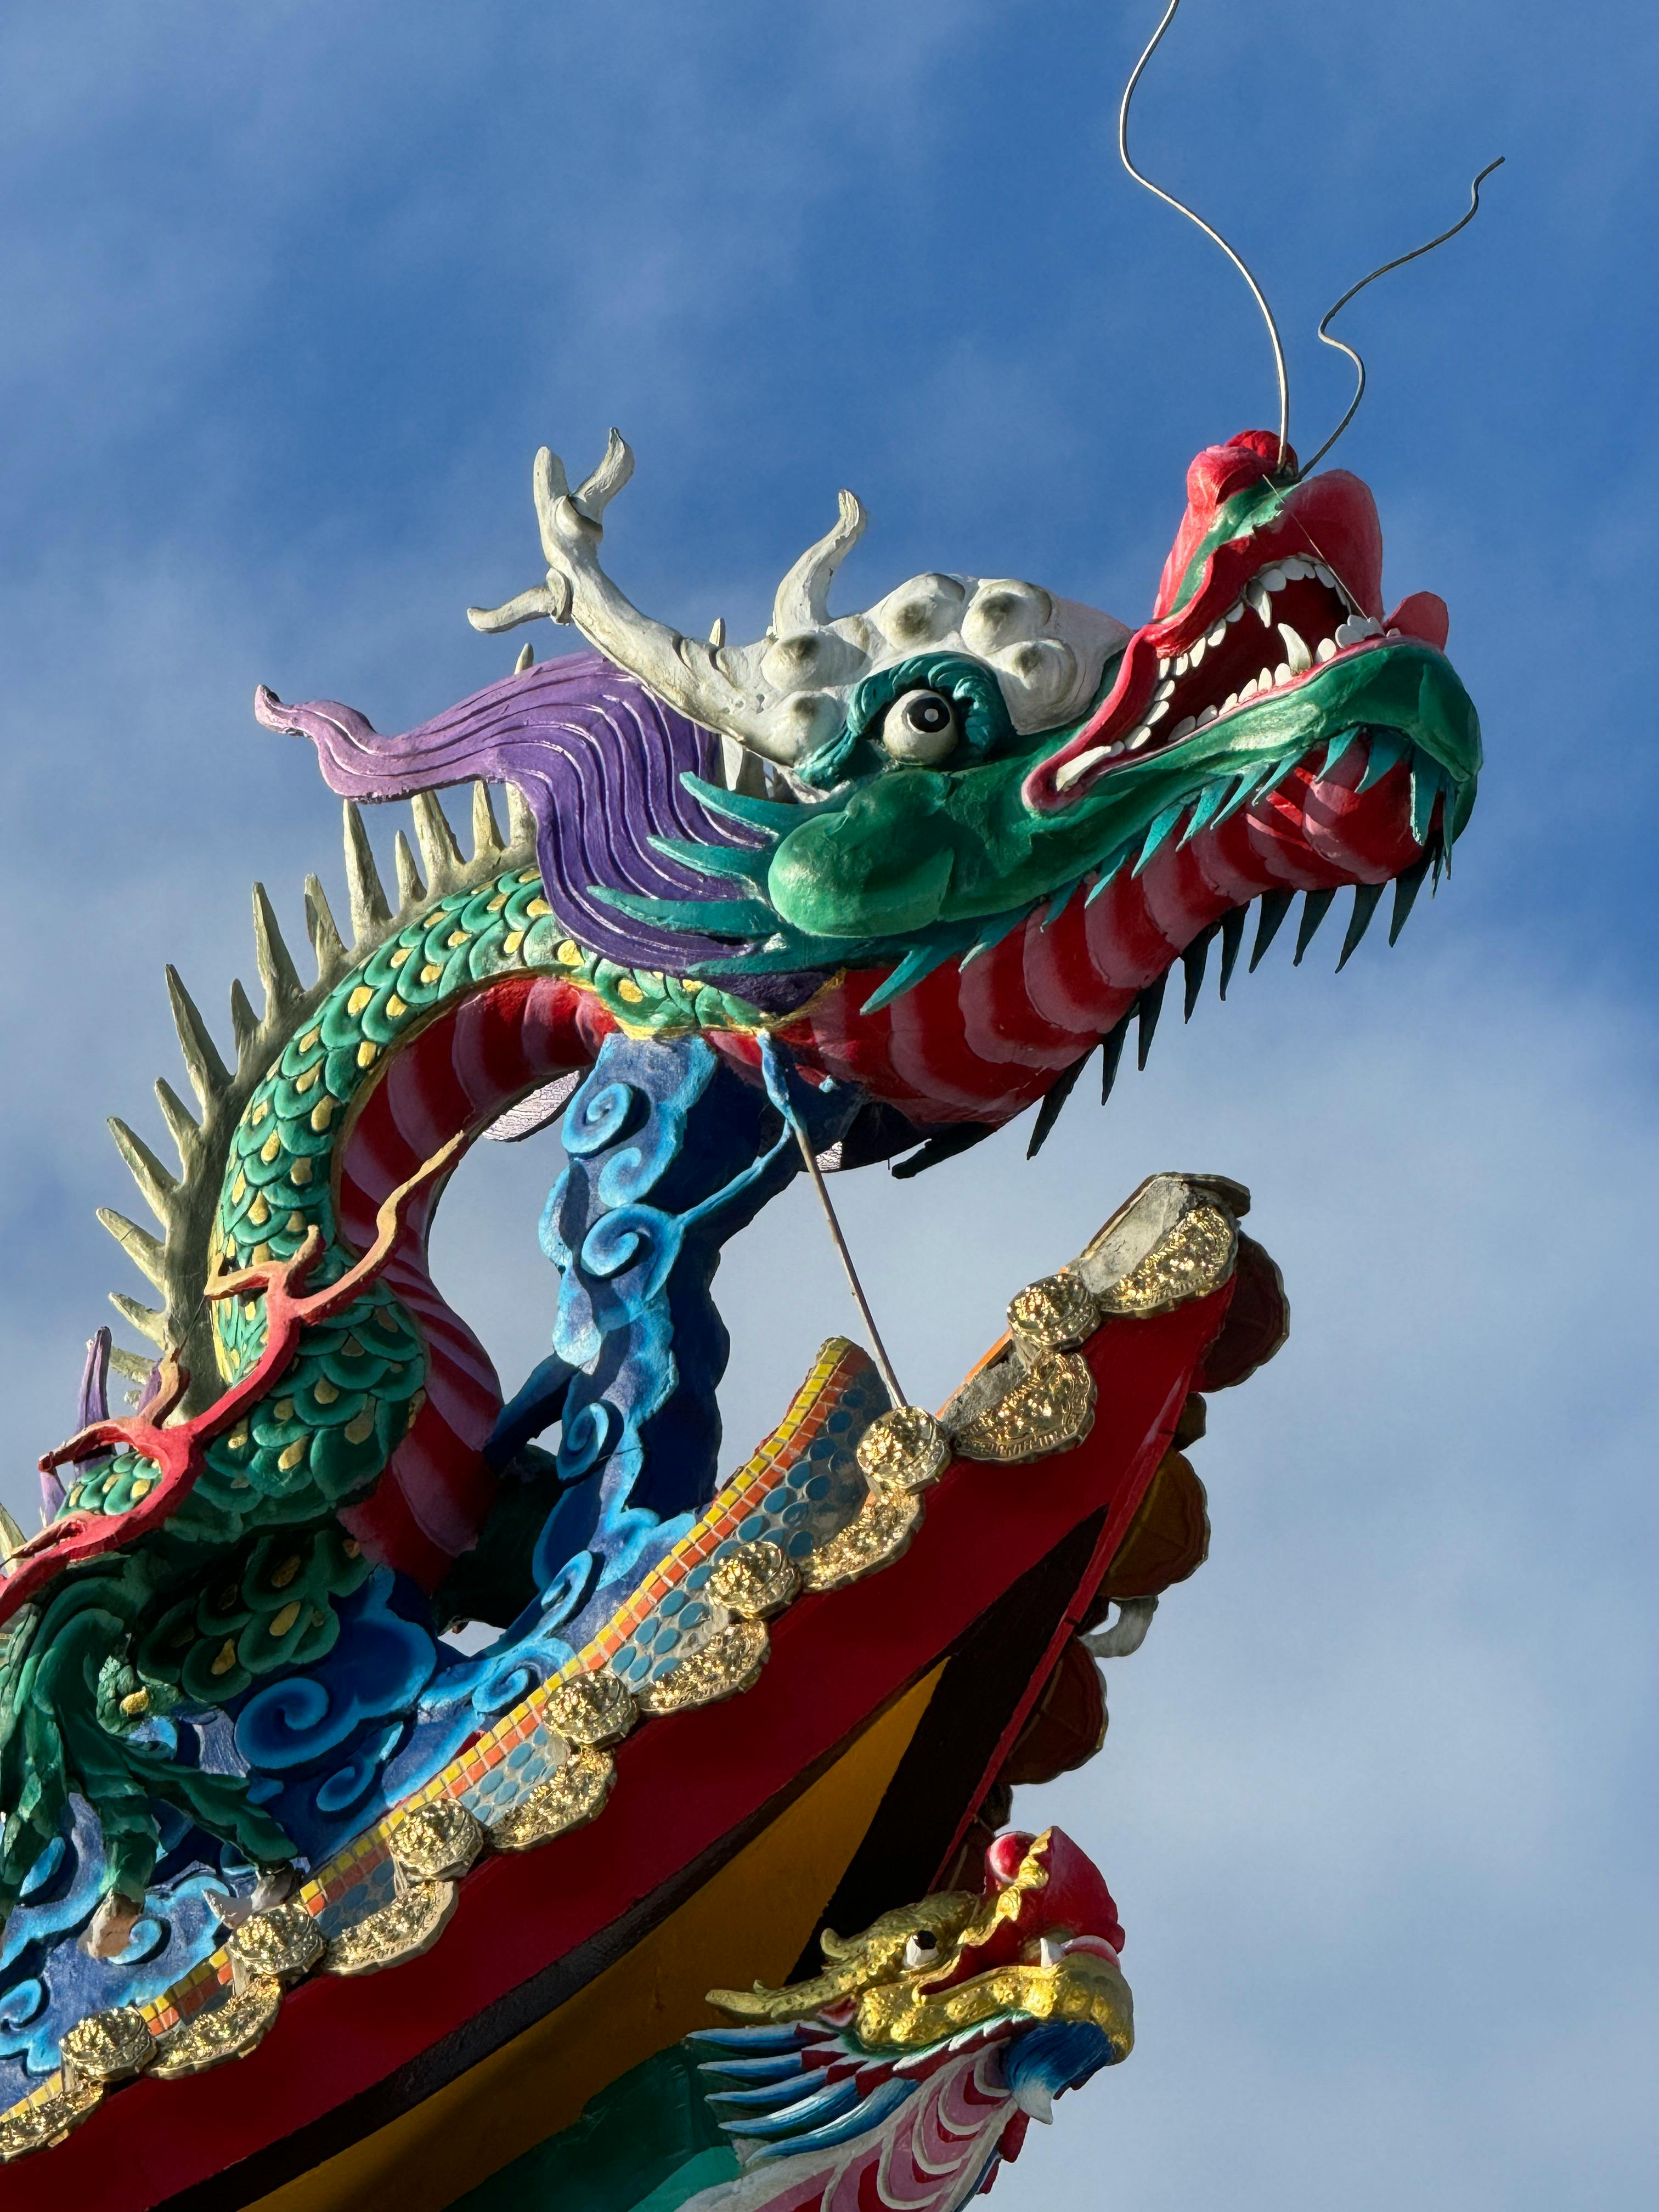 6 000+ Dragon Chinois banque d'images et photos libres de droit ·  Téléchargement gratuit · Photos Pexels